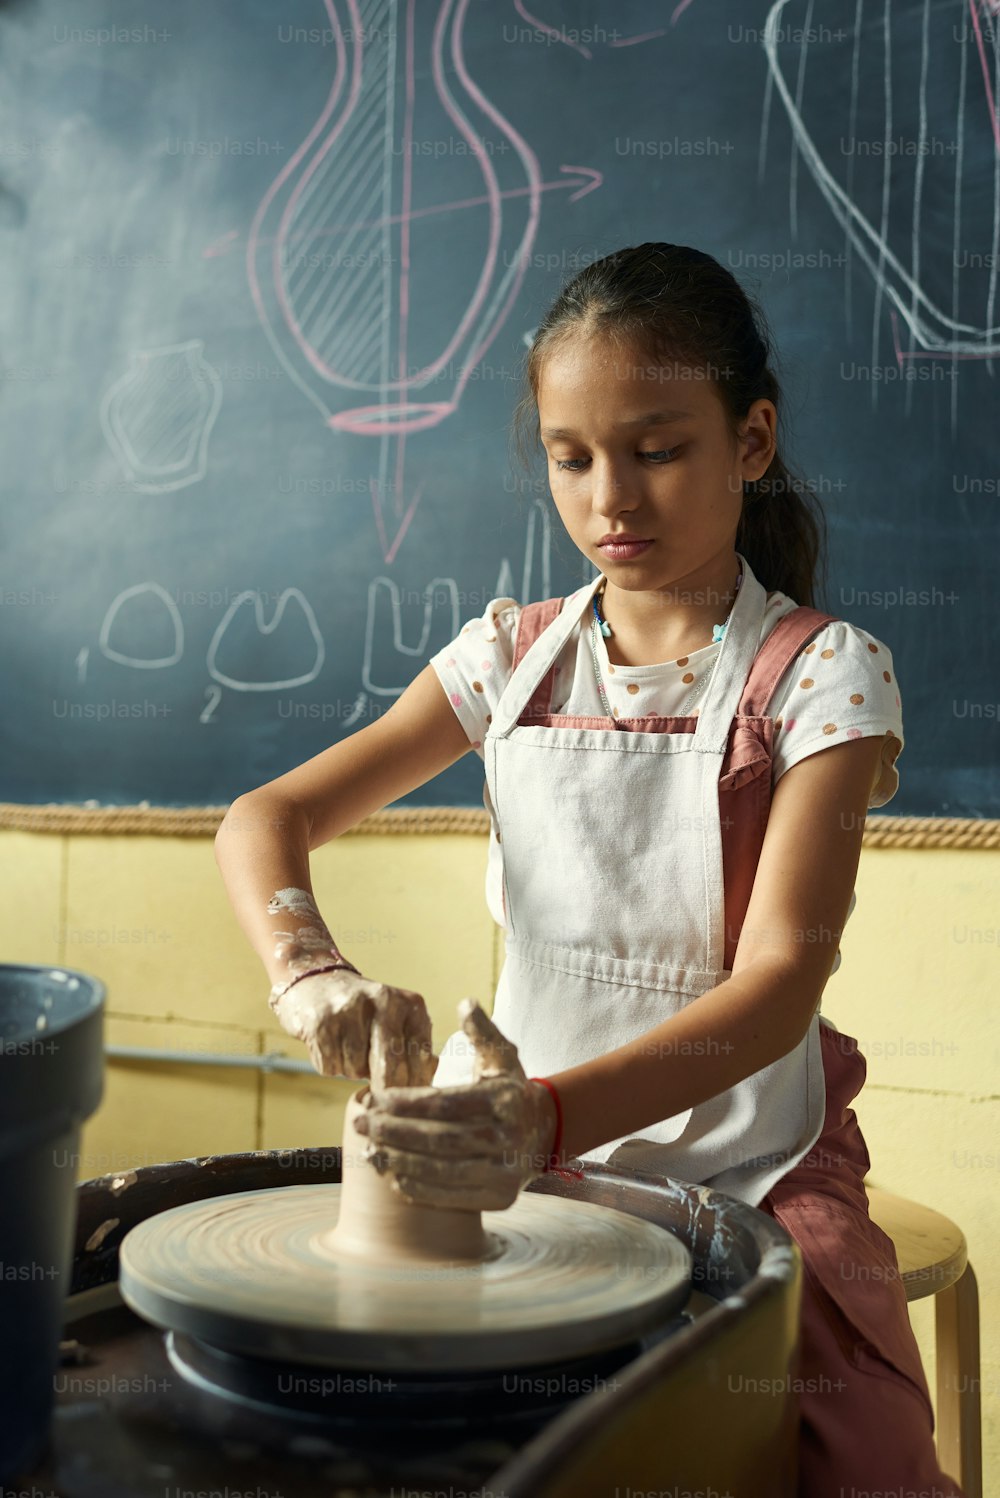 Studentessa contemporanea seduta ruotando la ruota di ceramica contro la lavagna mentre scolpendo una nuova brocca di argilla durante la lezione di artigianato